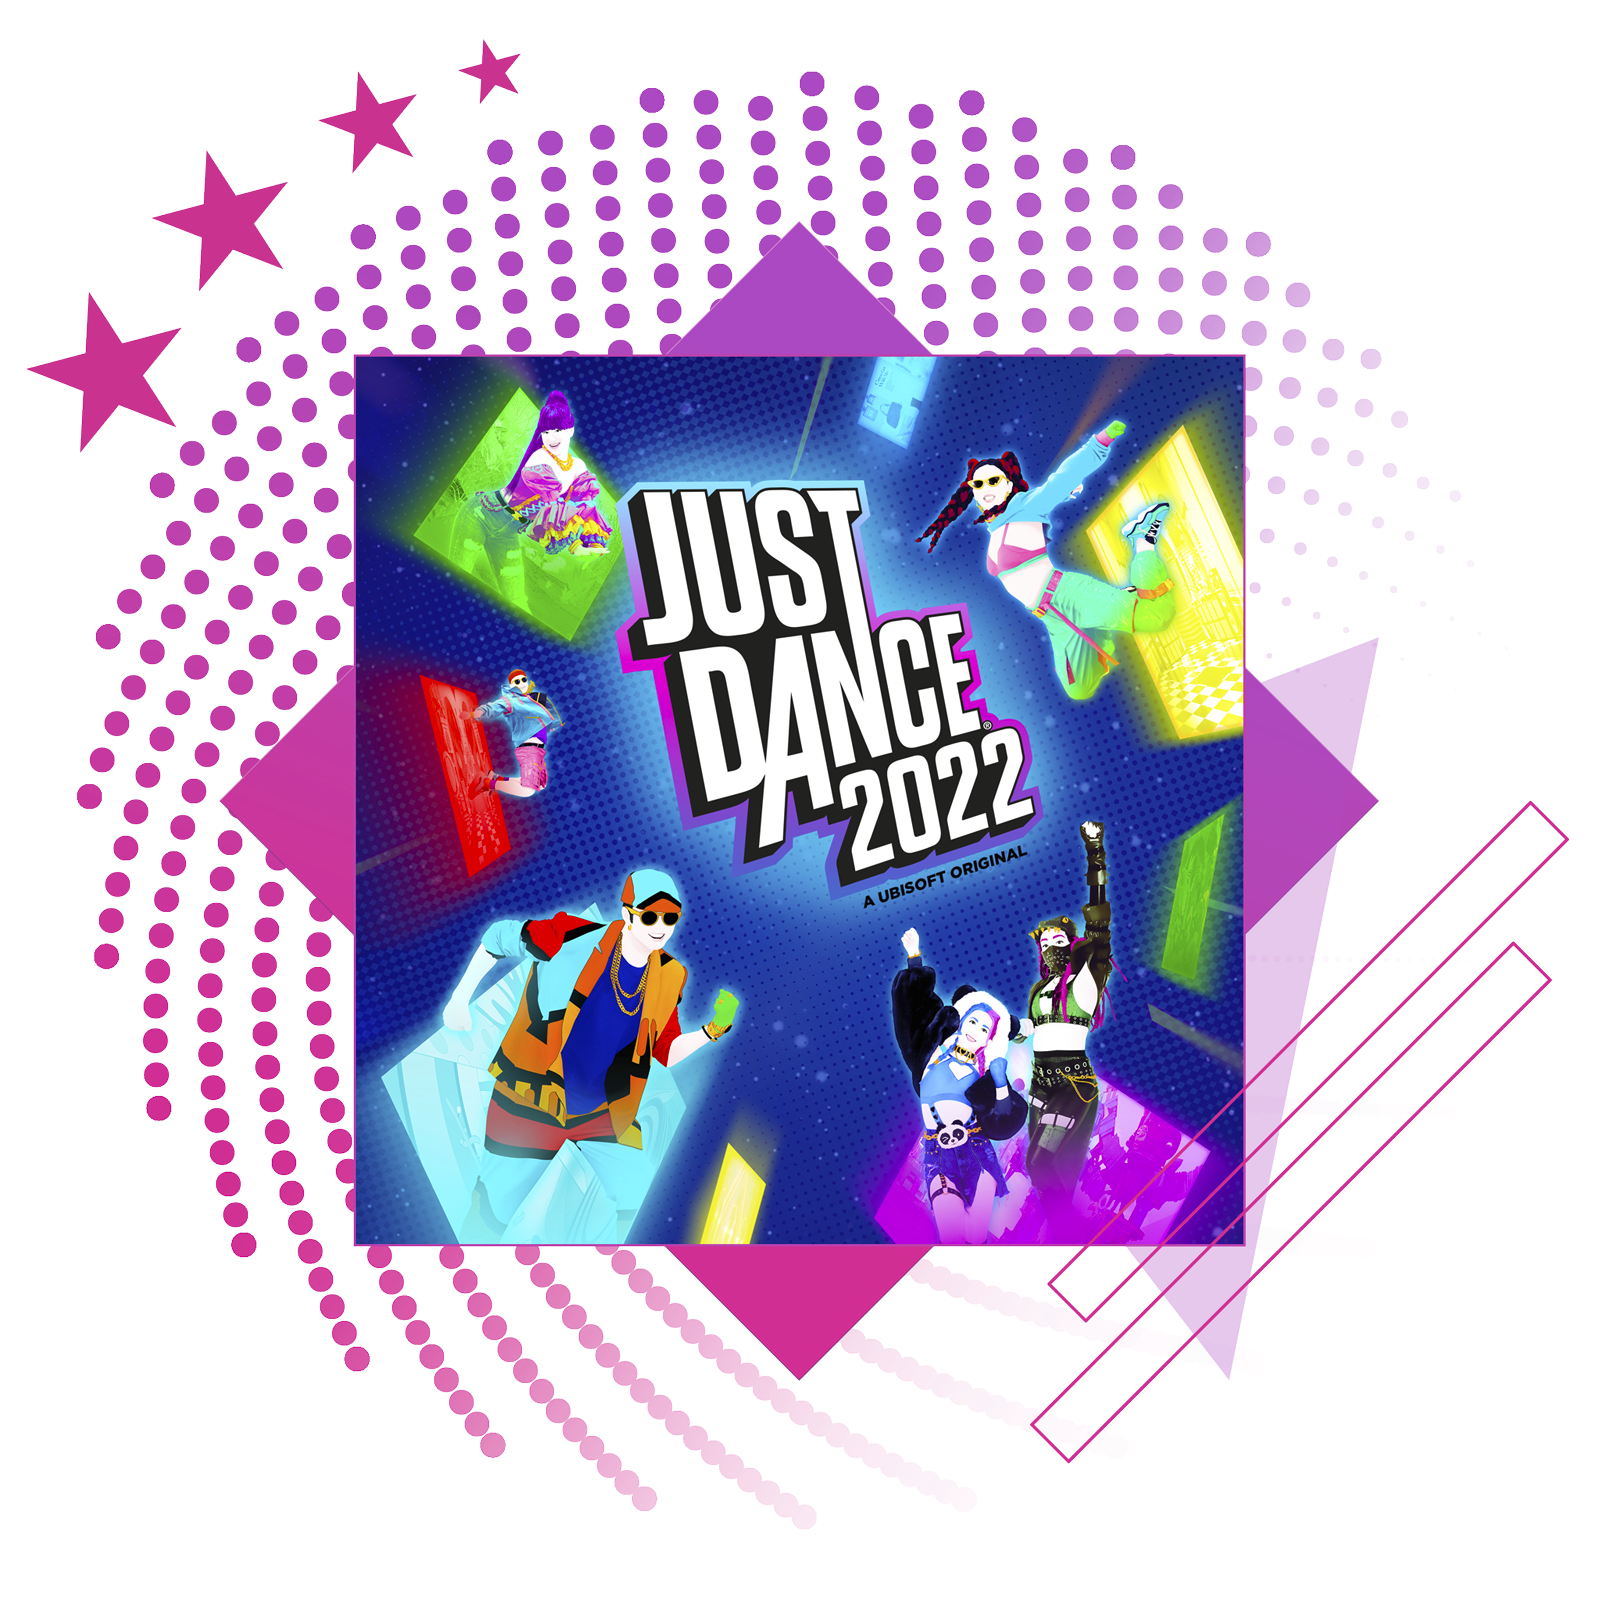 De bästa rytmspelen – artikelbild med key art från Just Dance 2022.